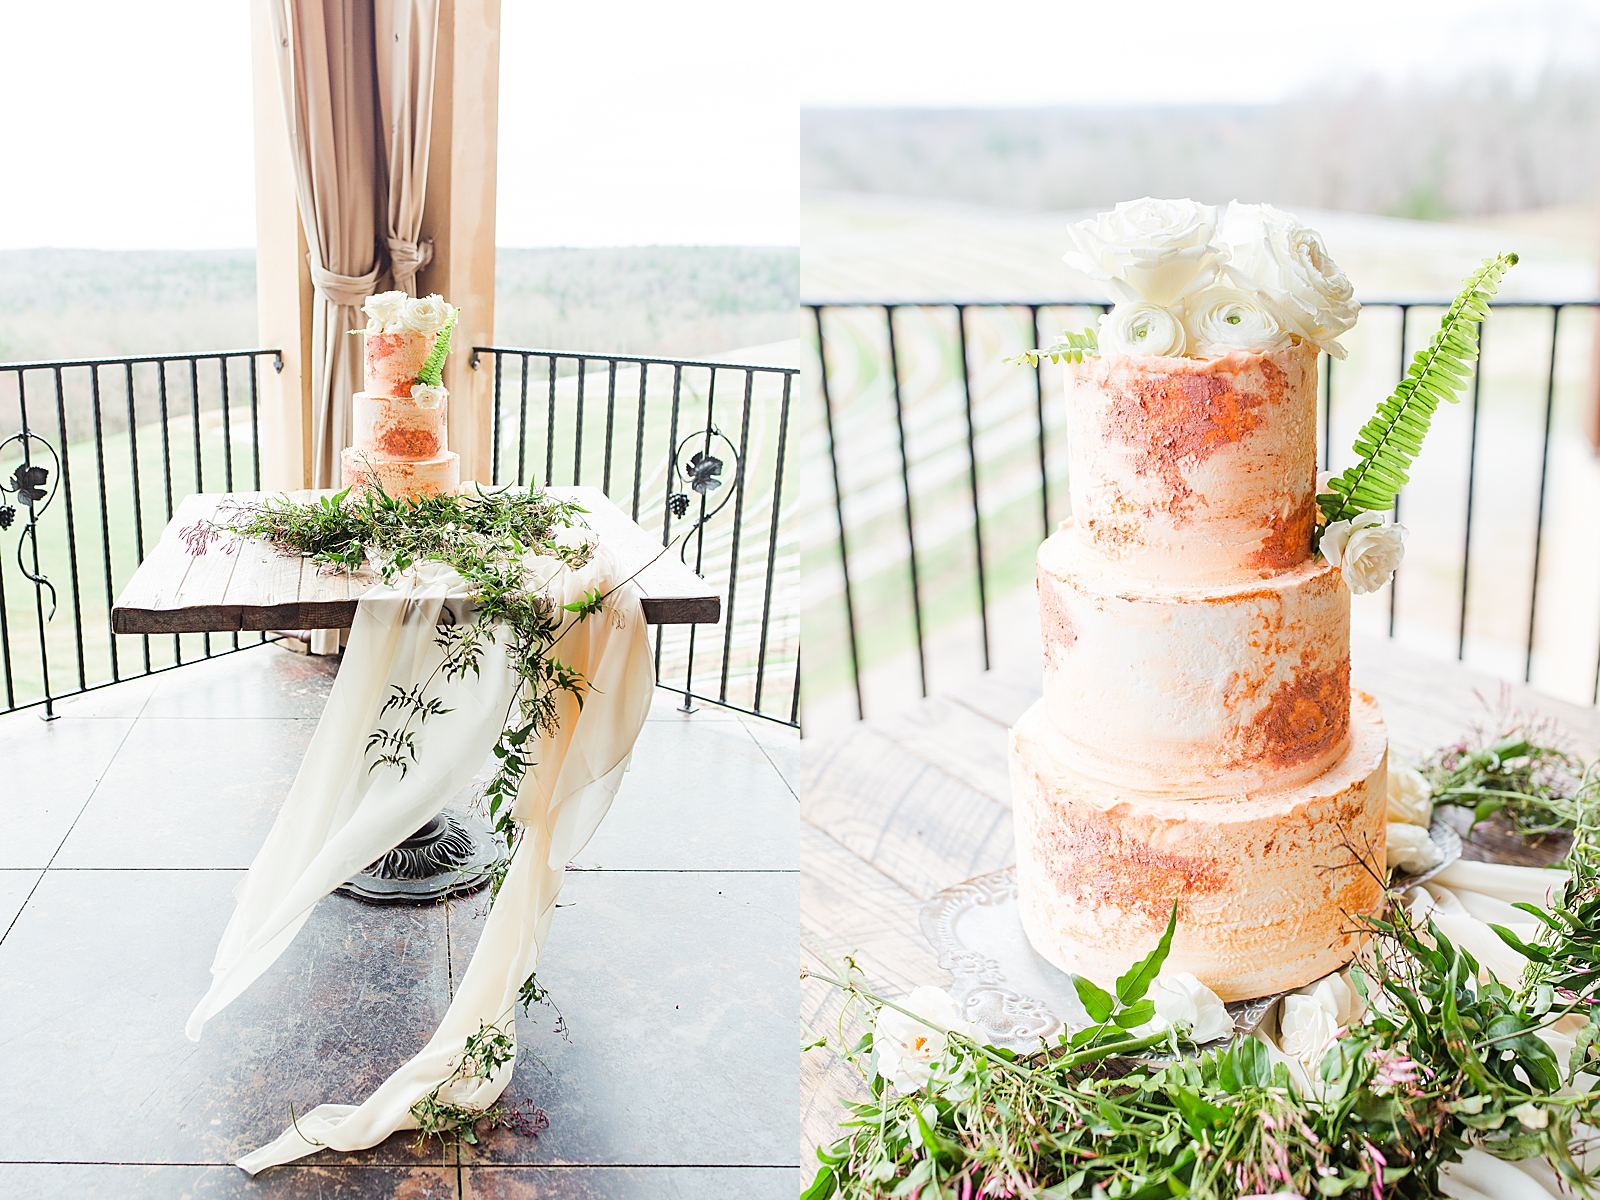 Montaluce Winery Wedding Reception Cake on cake Table Photos